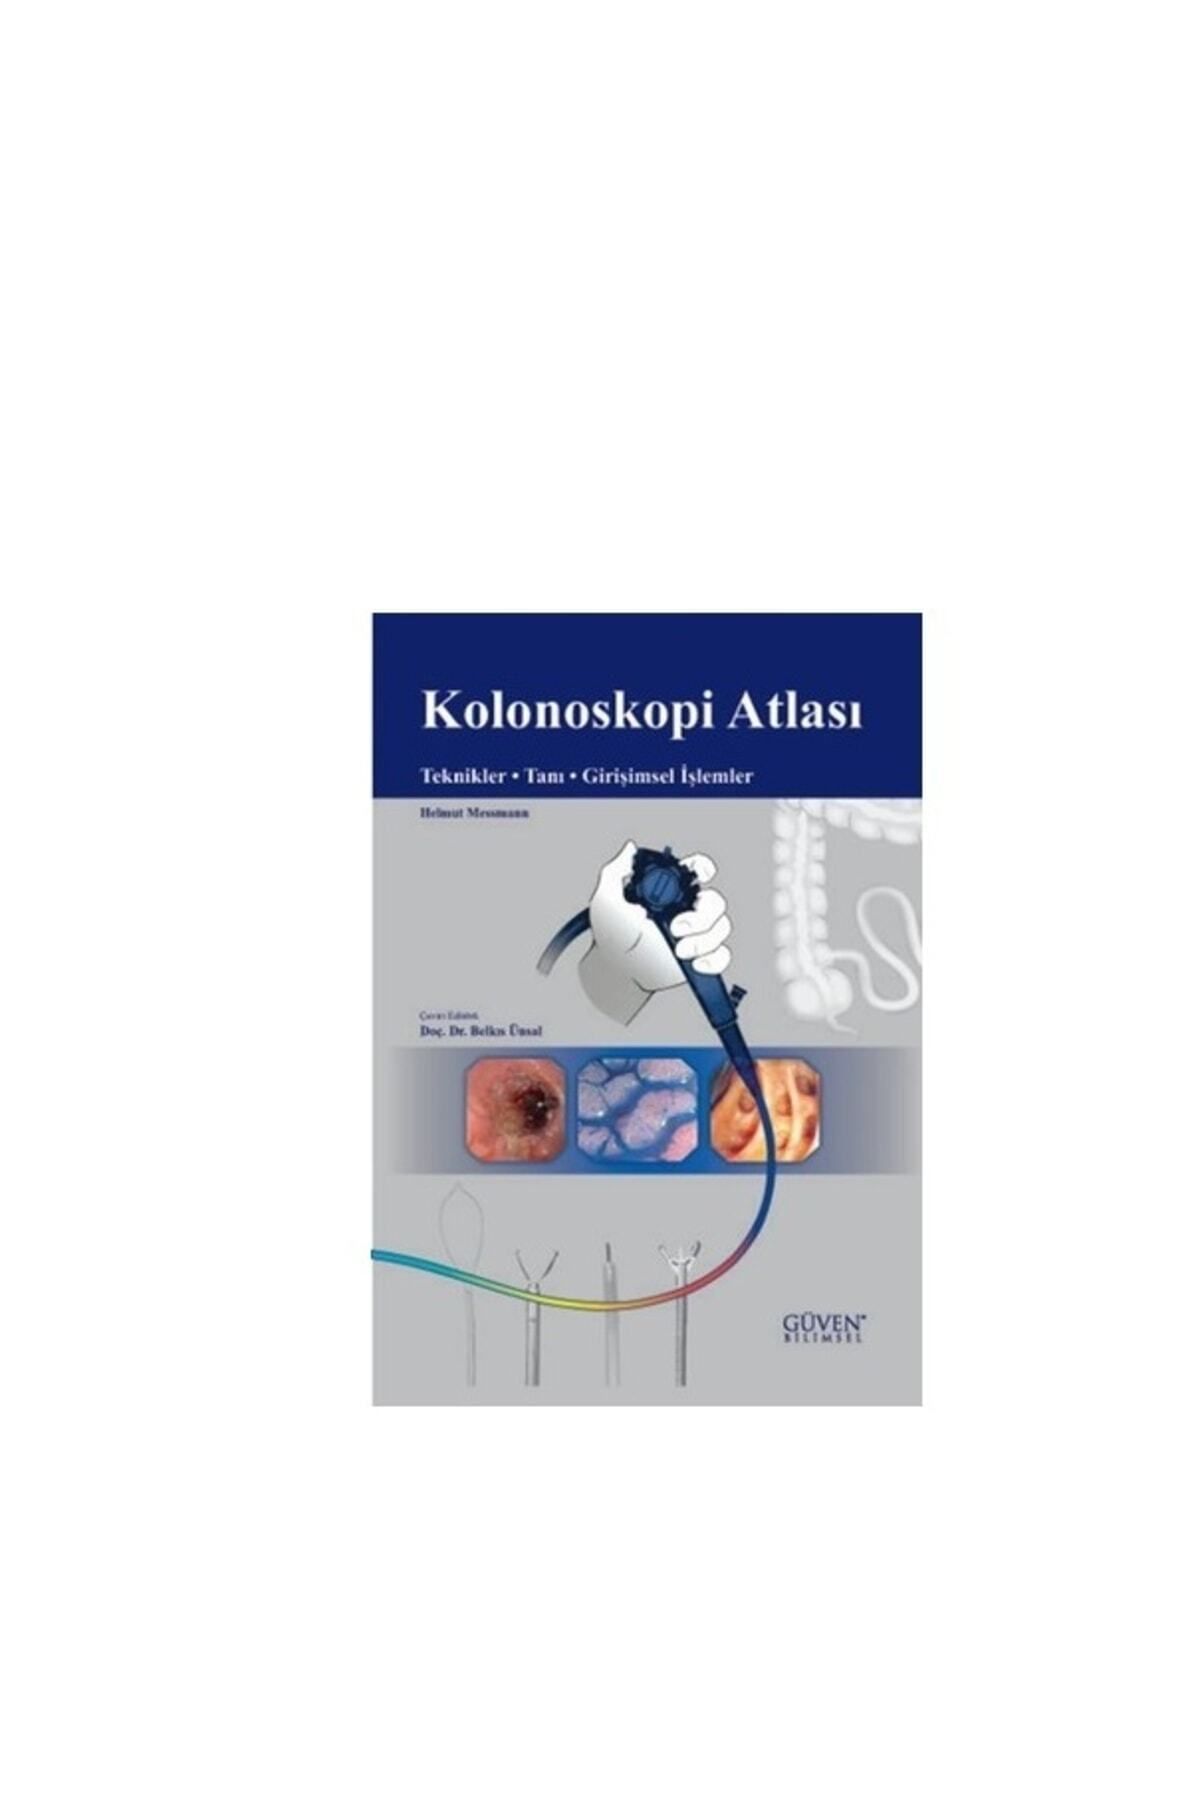 Pelikan Kitapevi Kolonoskopi Atlası-teknik-tanı-girişimsel Işlemler-belkıs Ünsal